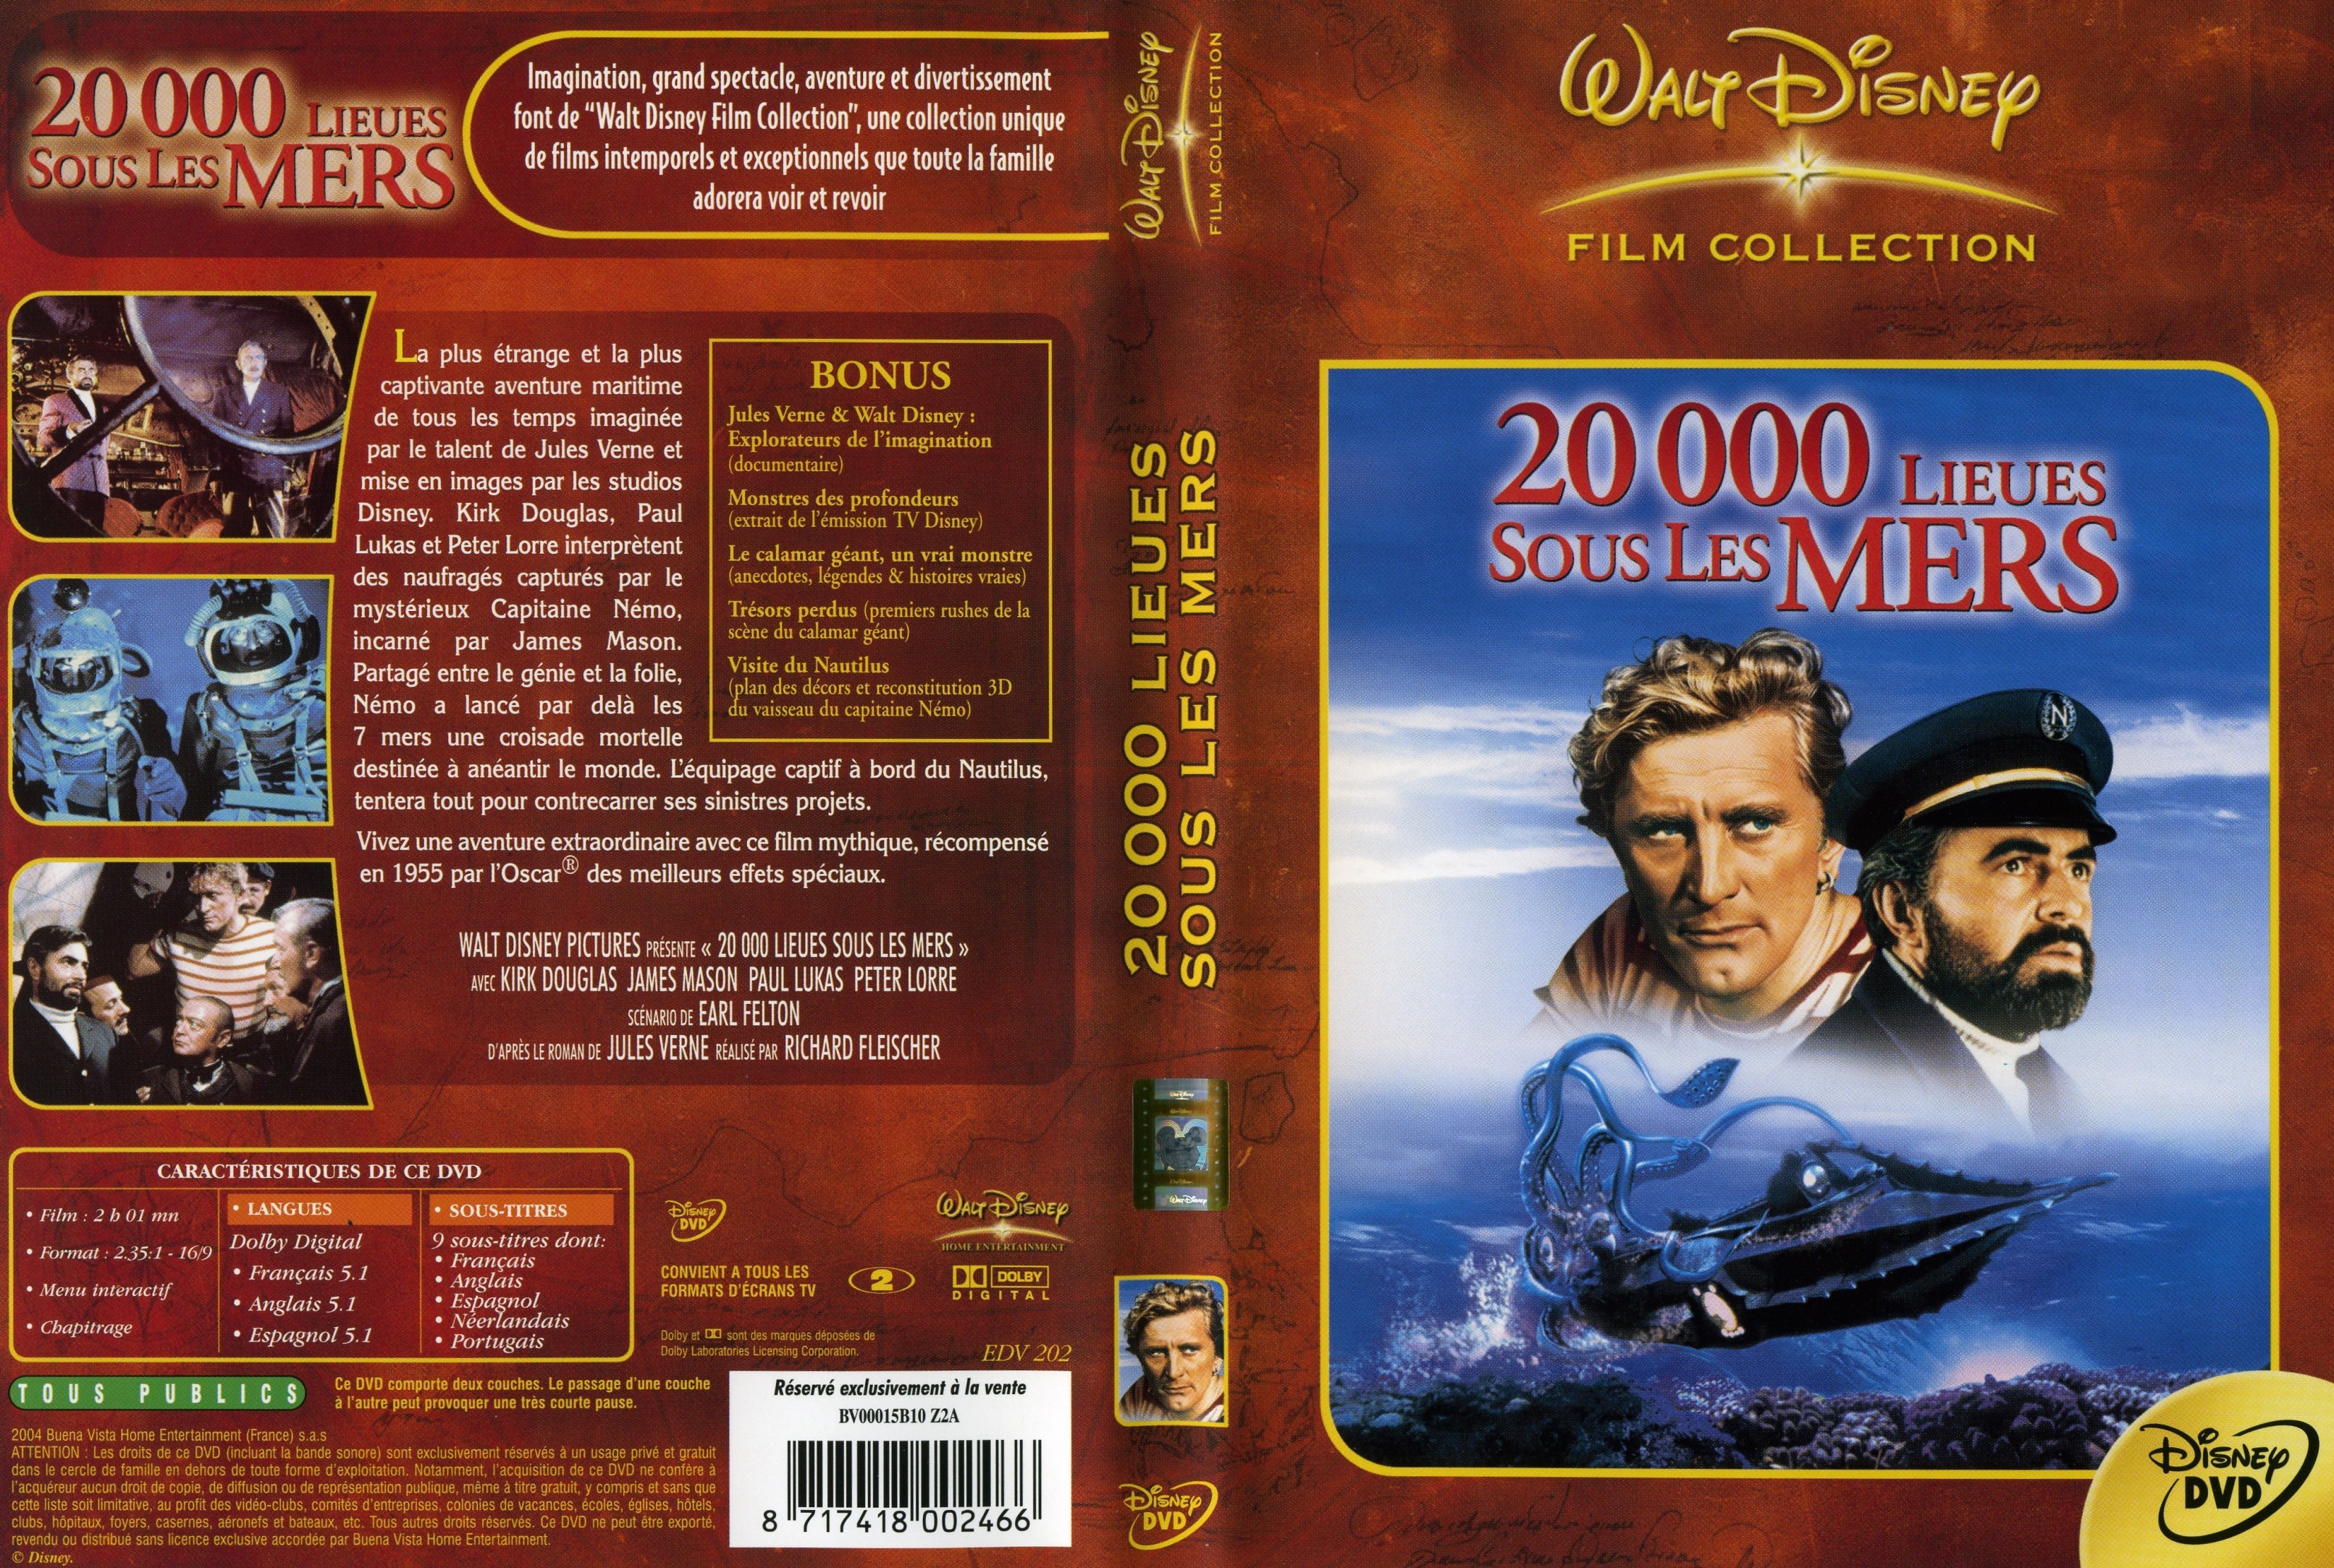 Jaquette DVD 20000 lieues sous les mers